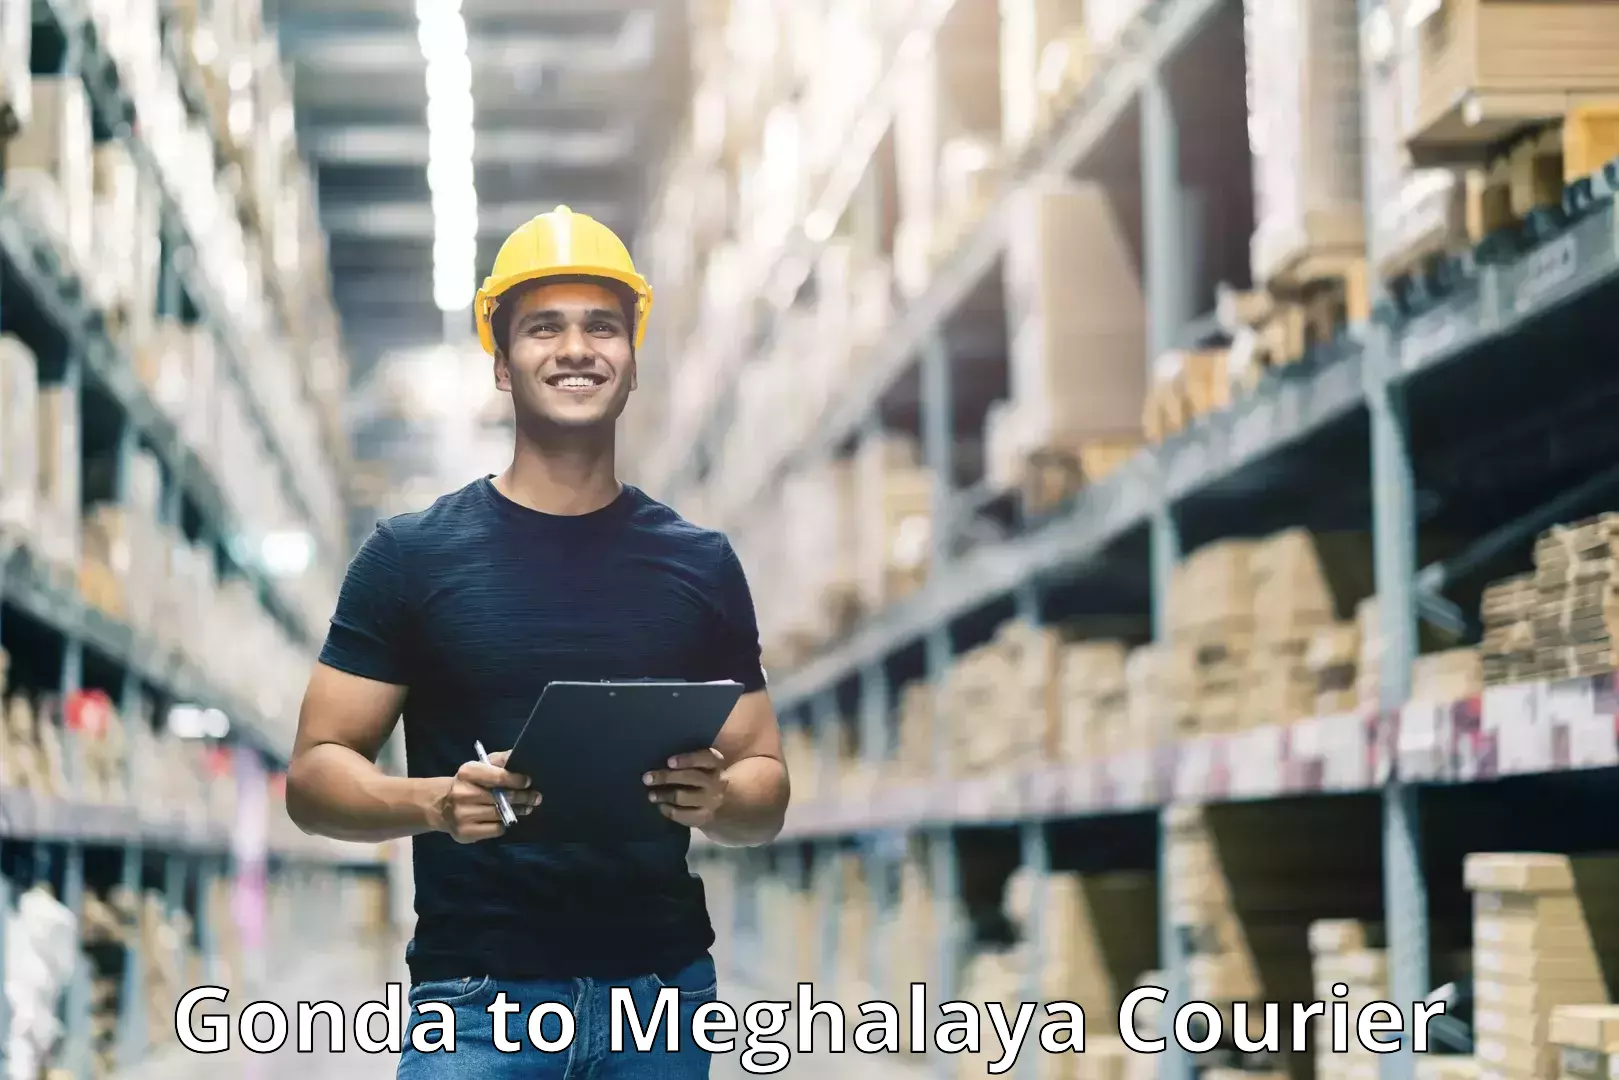 Smart shipping technology Gonda to Meghalaya